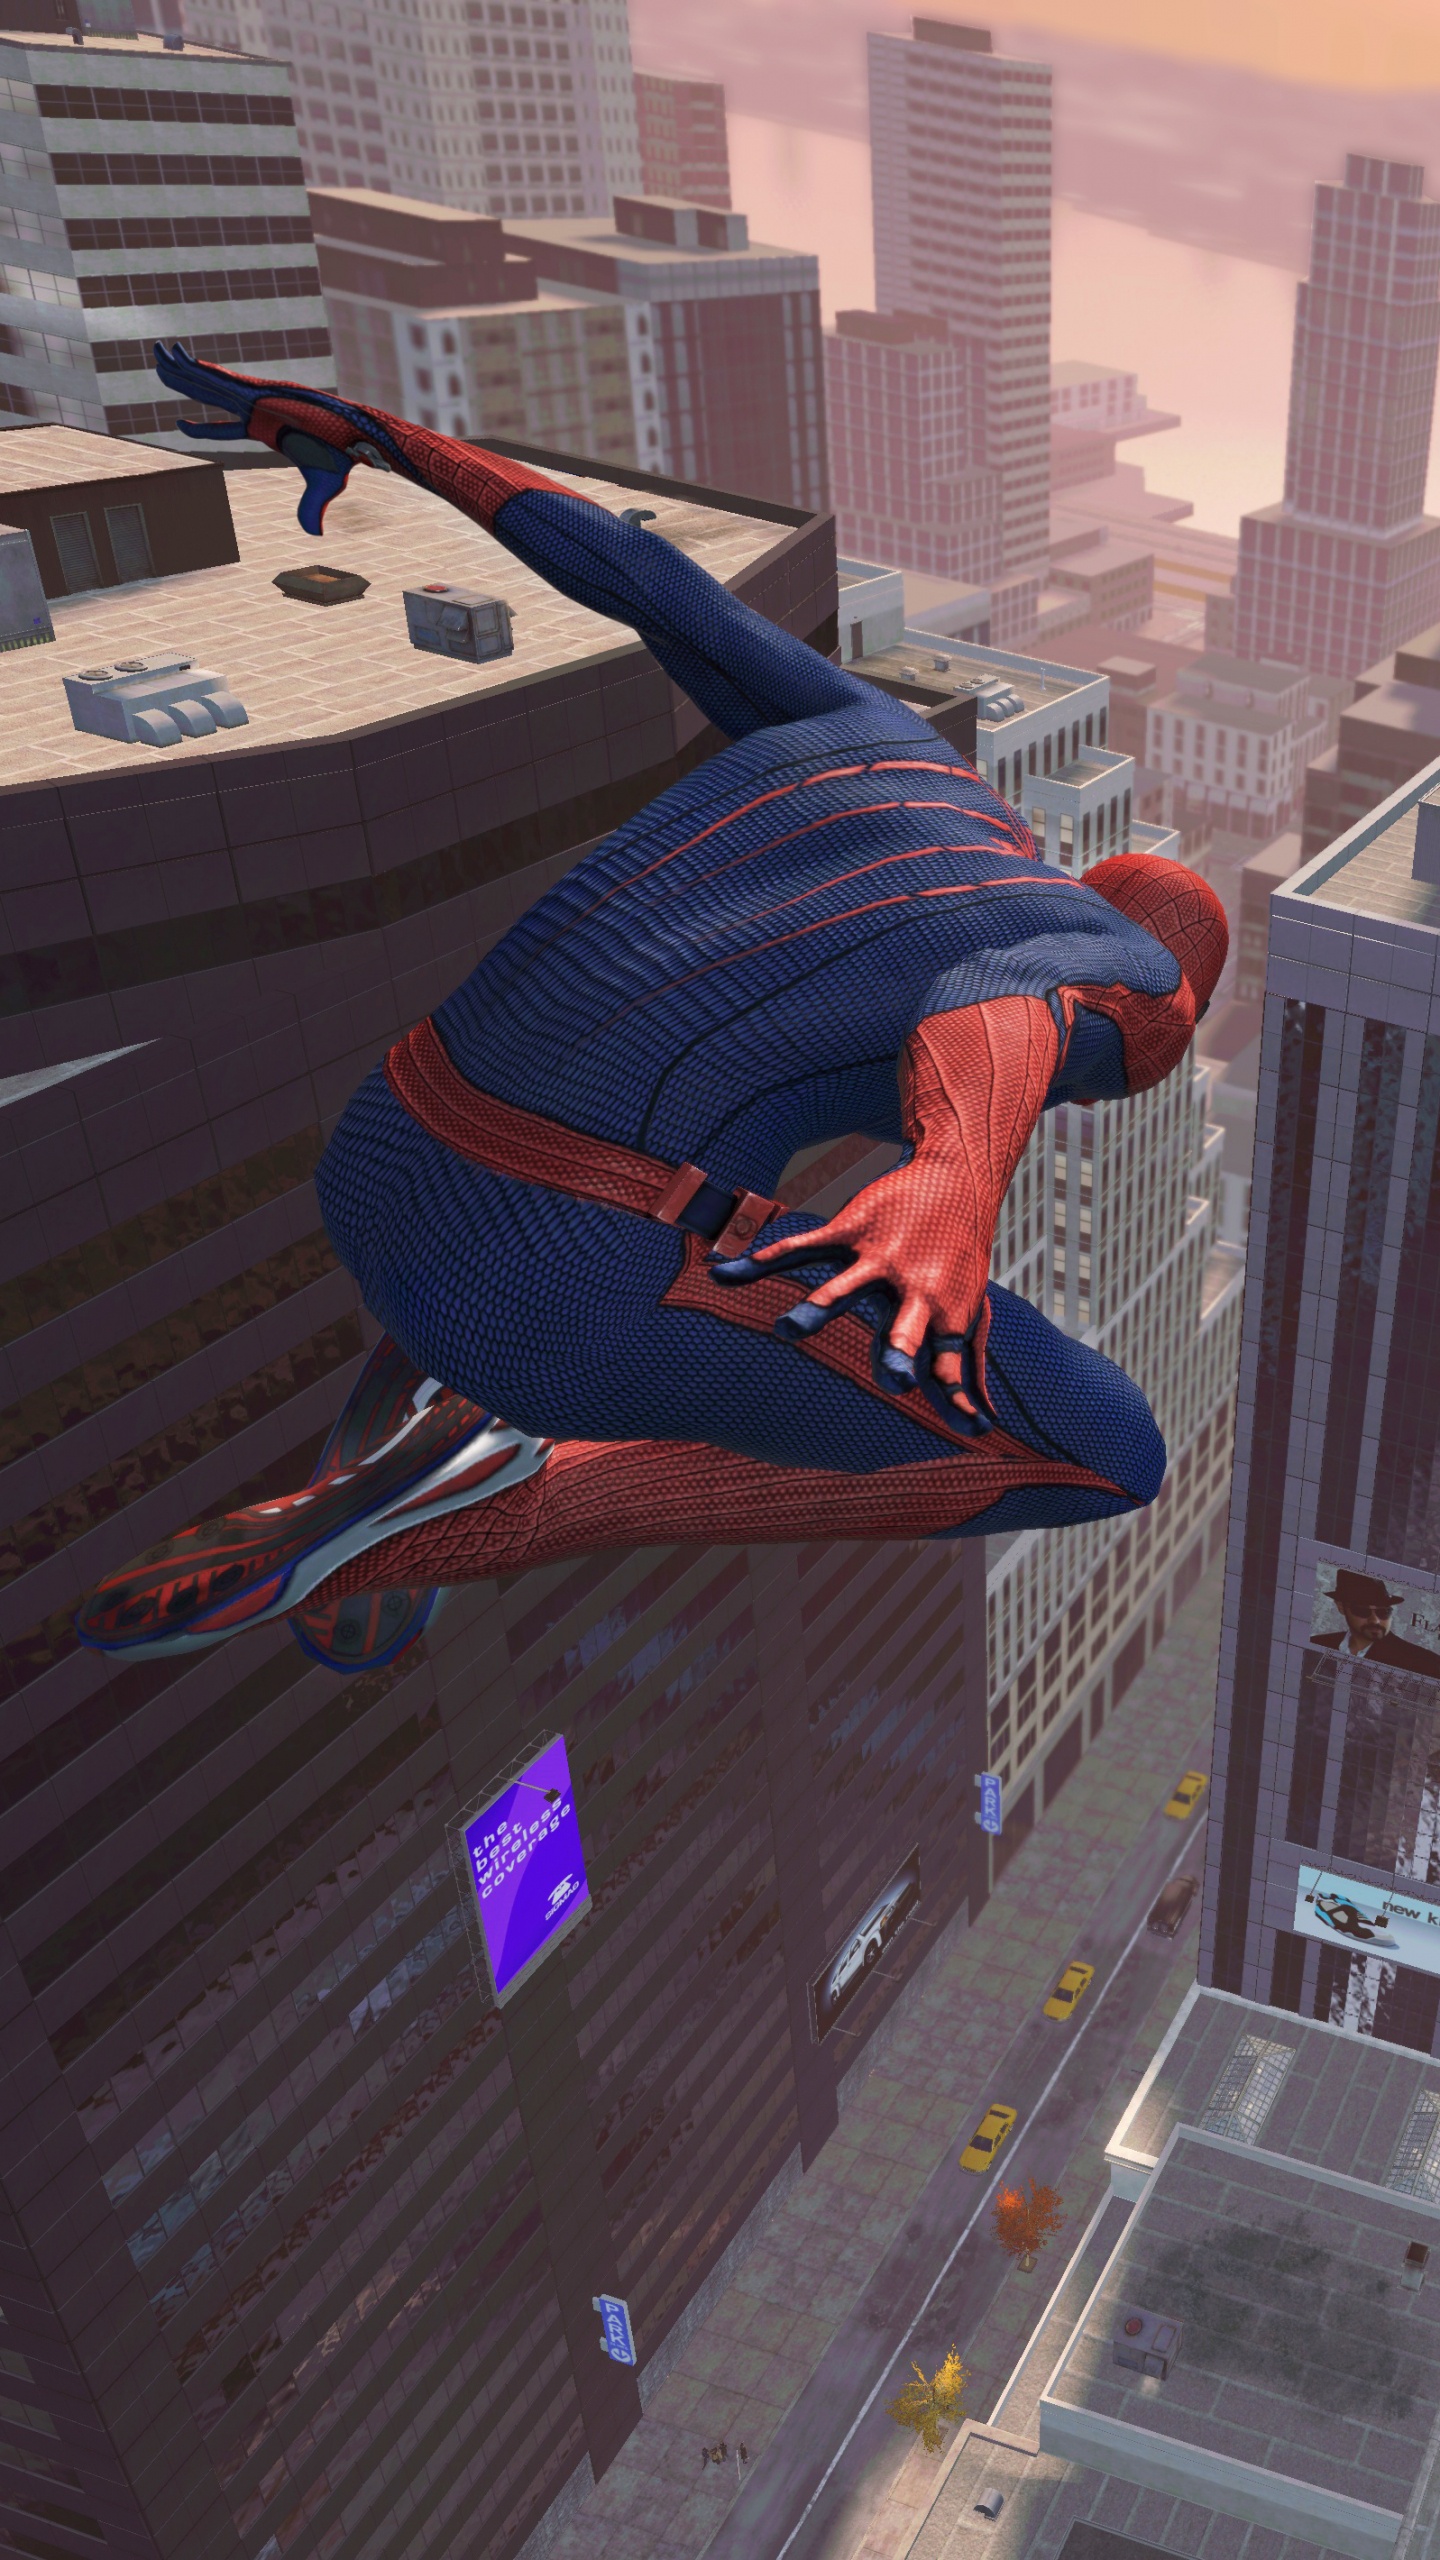 神奇的蜘蛛侠, Spider-man, Beenox, 极限运动, 冒险的游戏 壁纸 1440x2560 允许